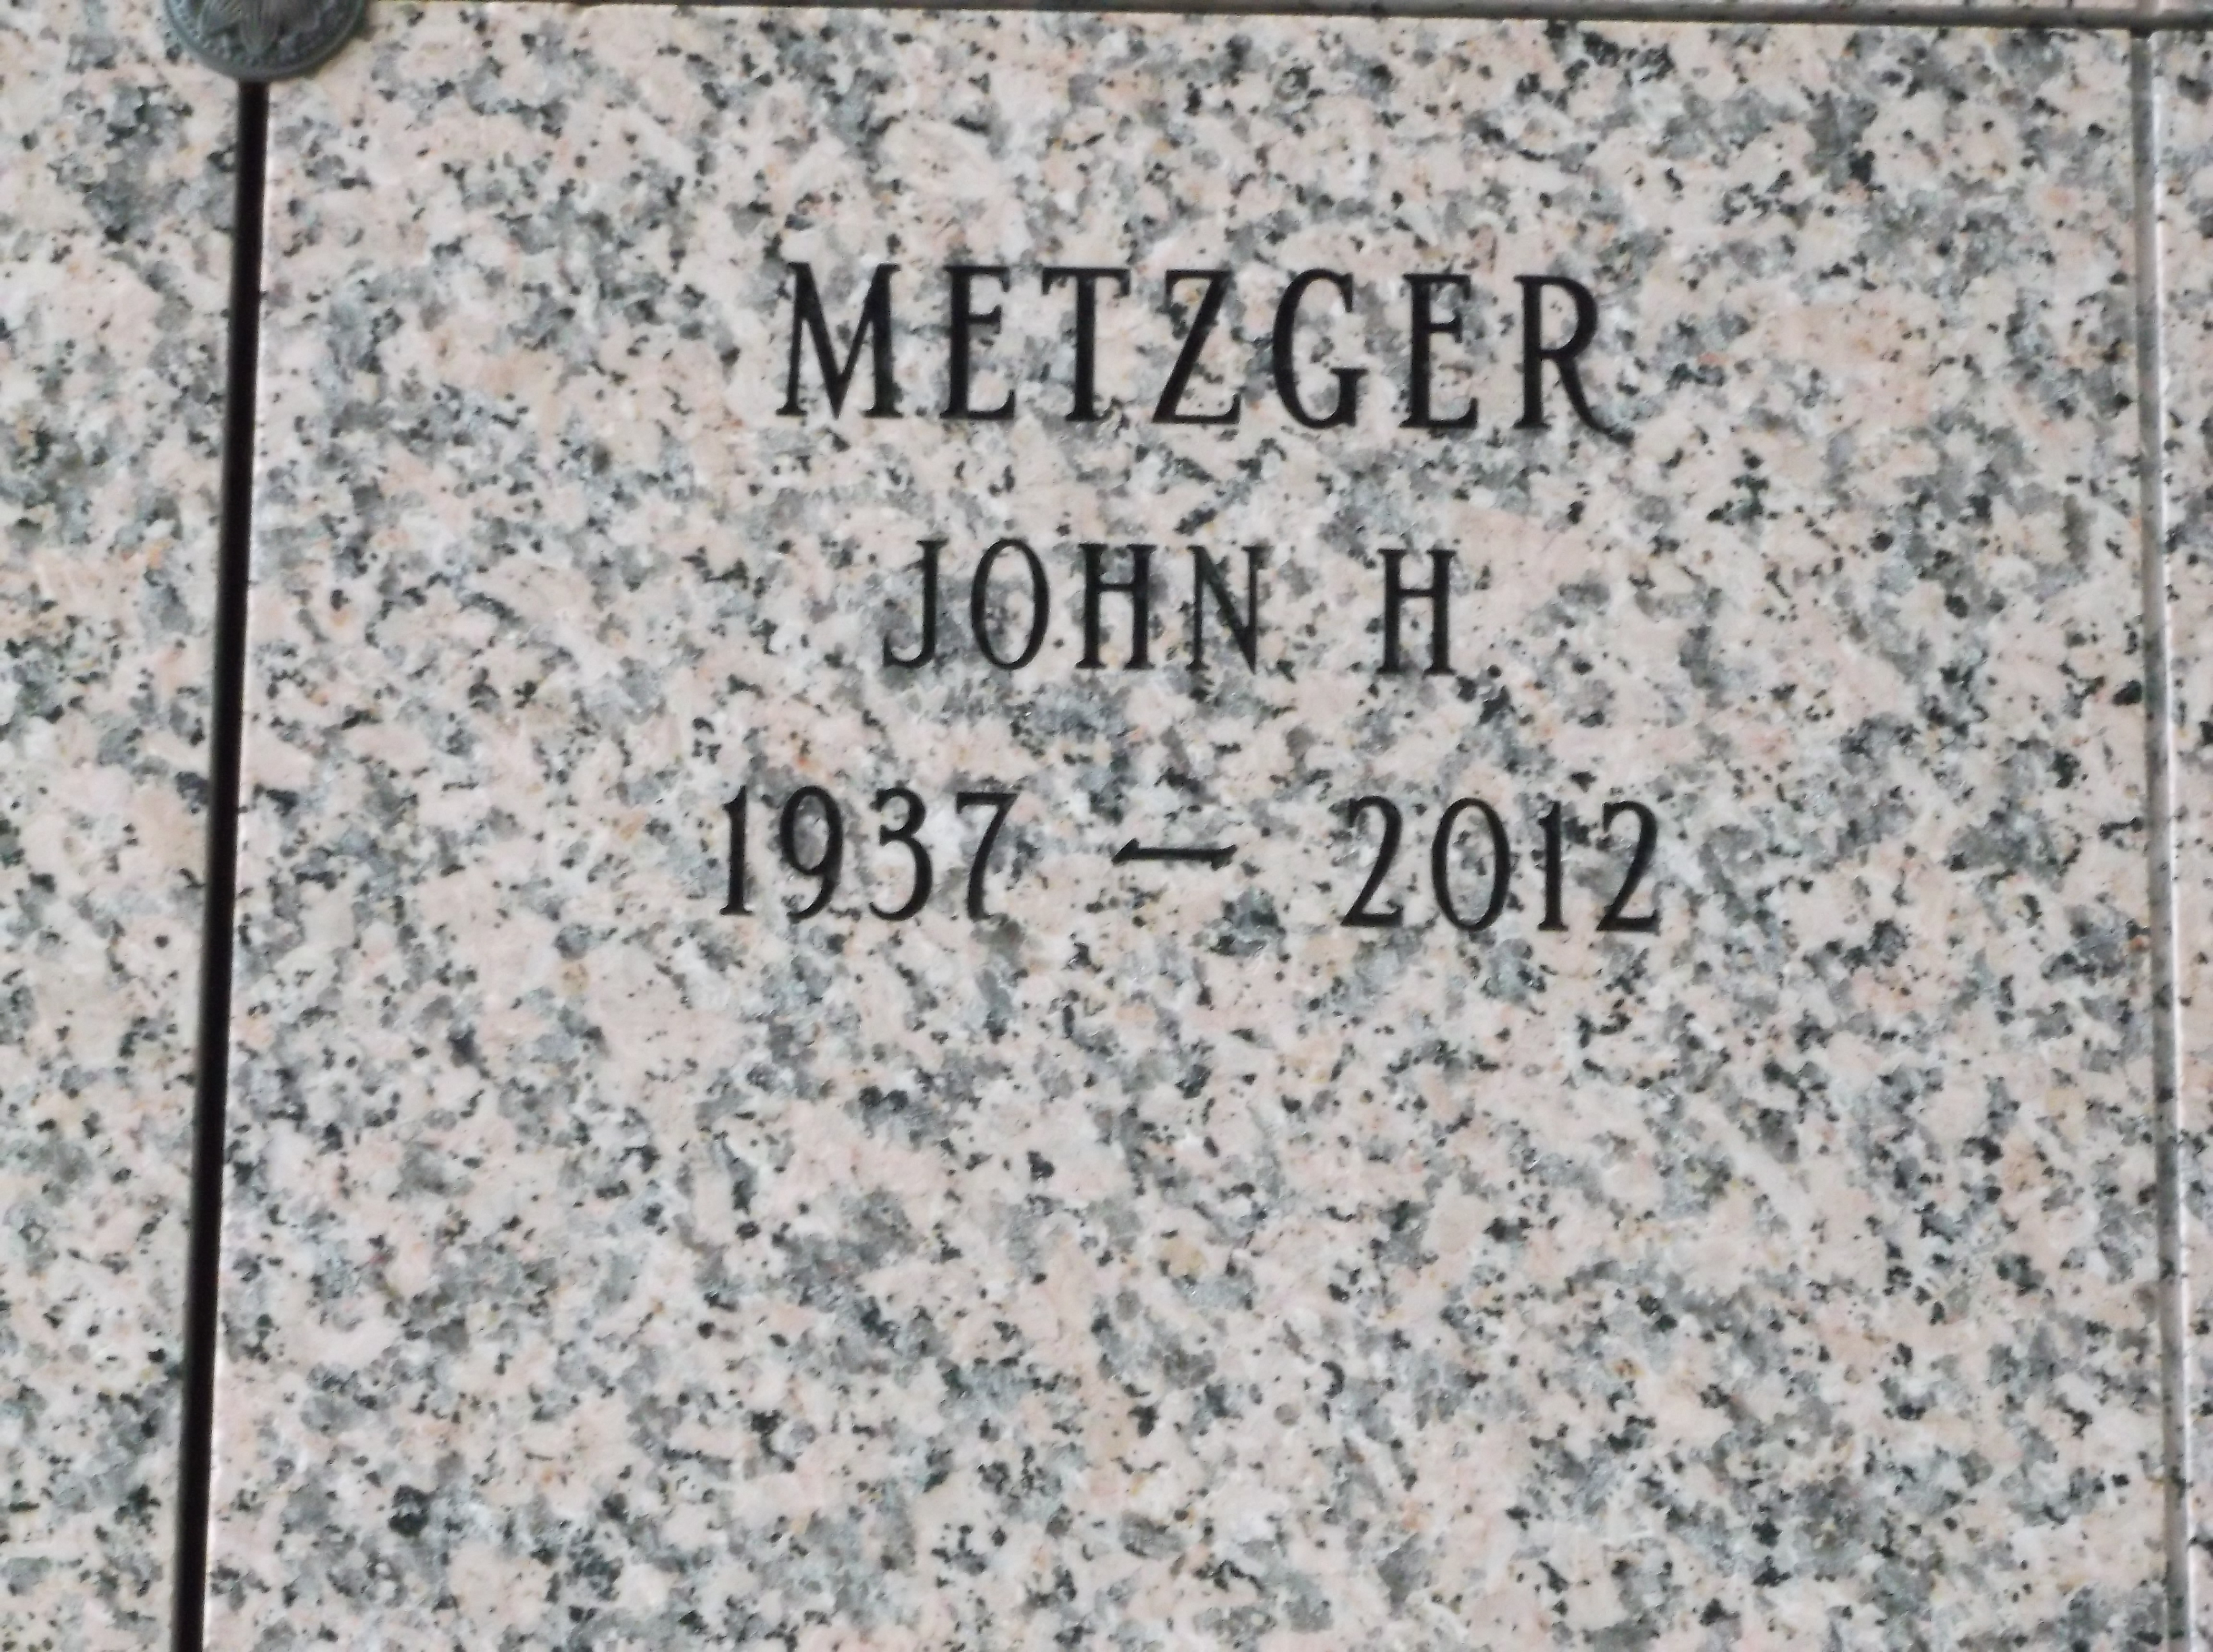 John H Metzger